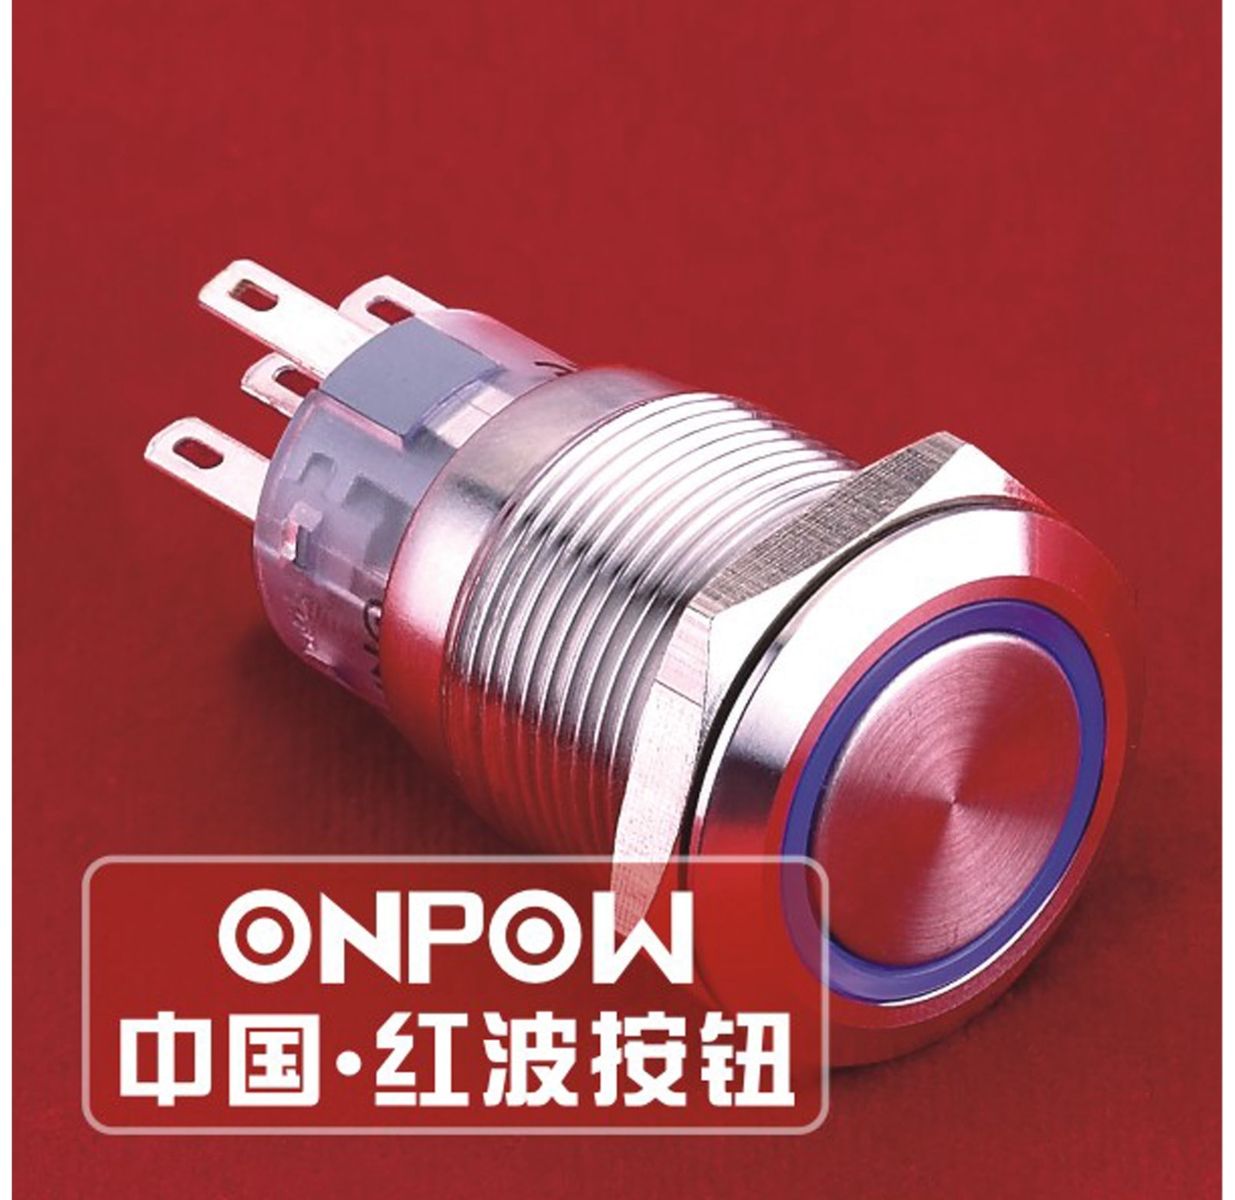 ONPOW Schalter, 24 V/DC, 1x Off/(On), Beleuchtung grün, Lötanschluss, flach rund, Edelstahl, 19 mm von ONPOW